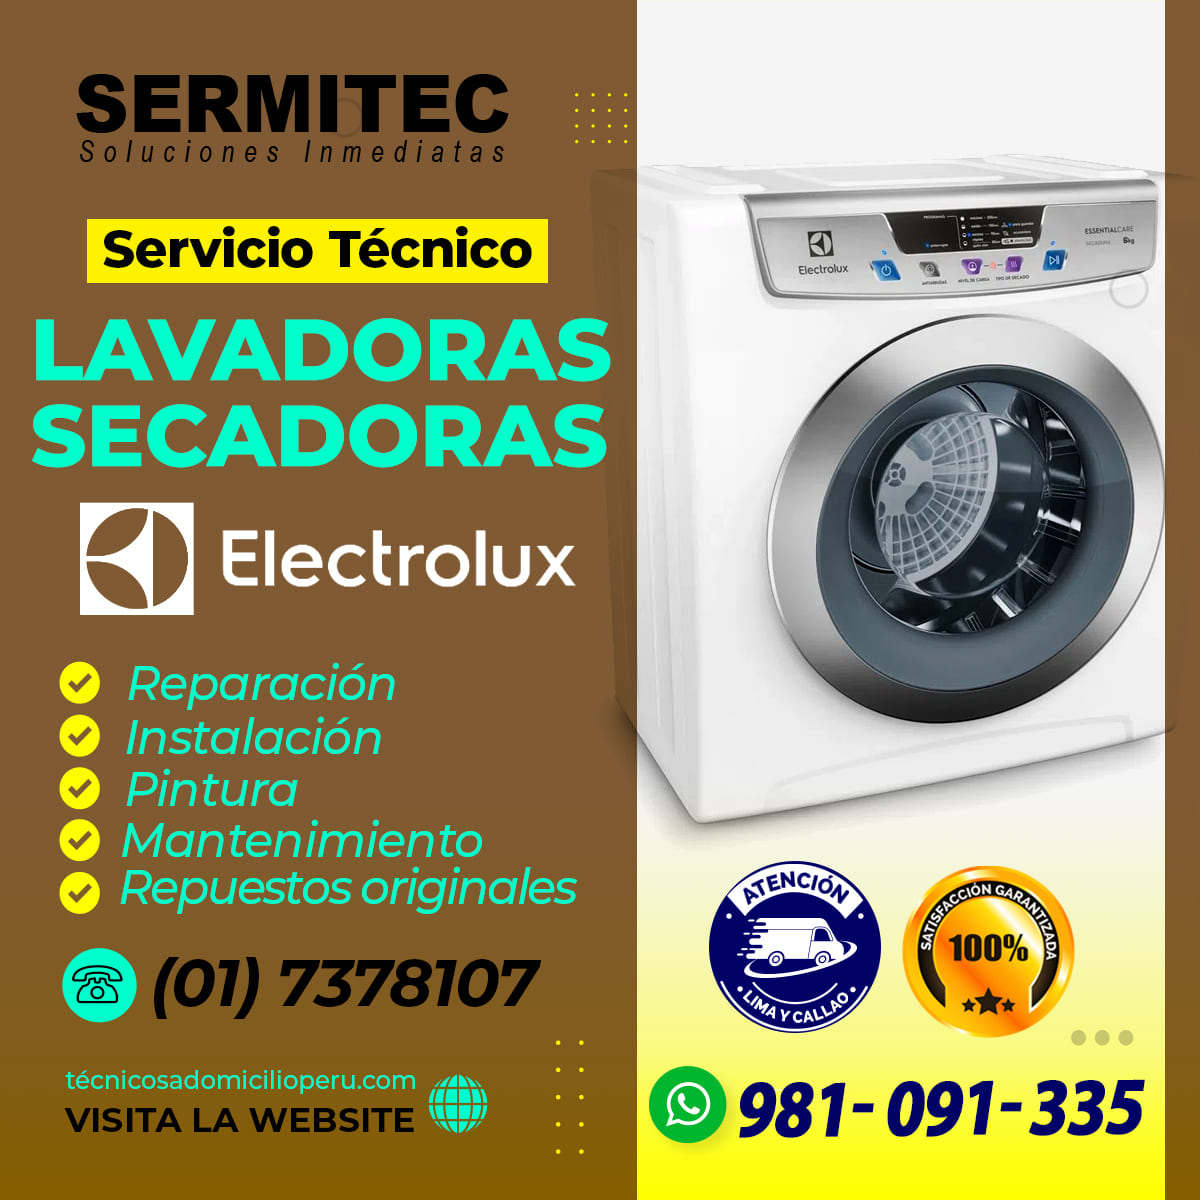 RESULTADOS INMEDIATOS SERVICIO TECNICO ELECTROLUX 981091335 CAMPOY SJL